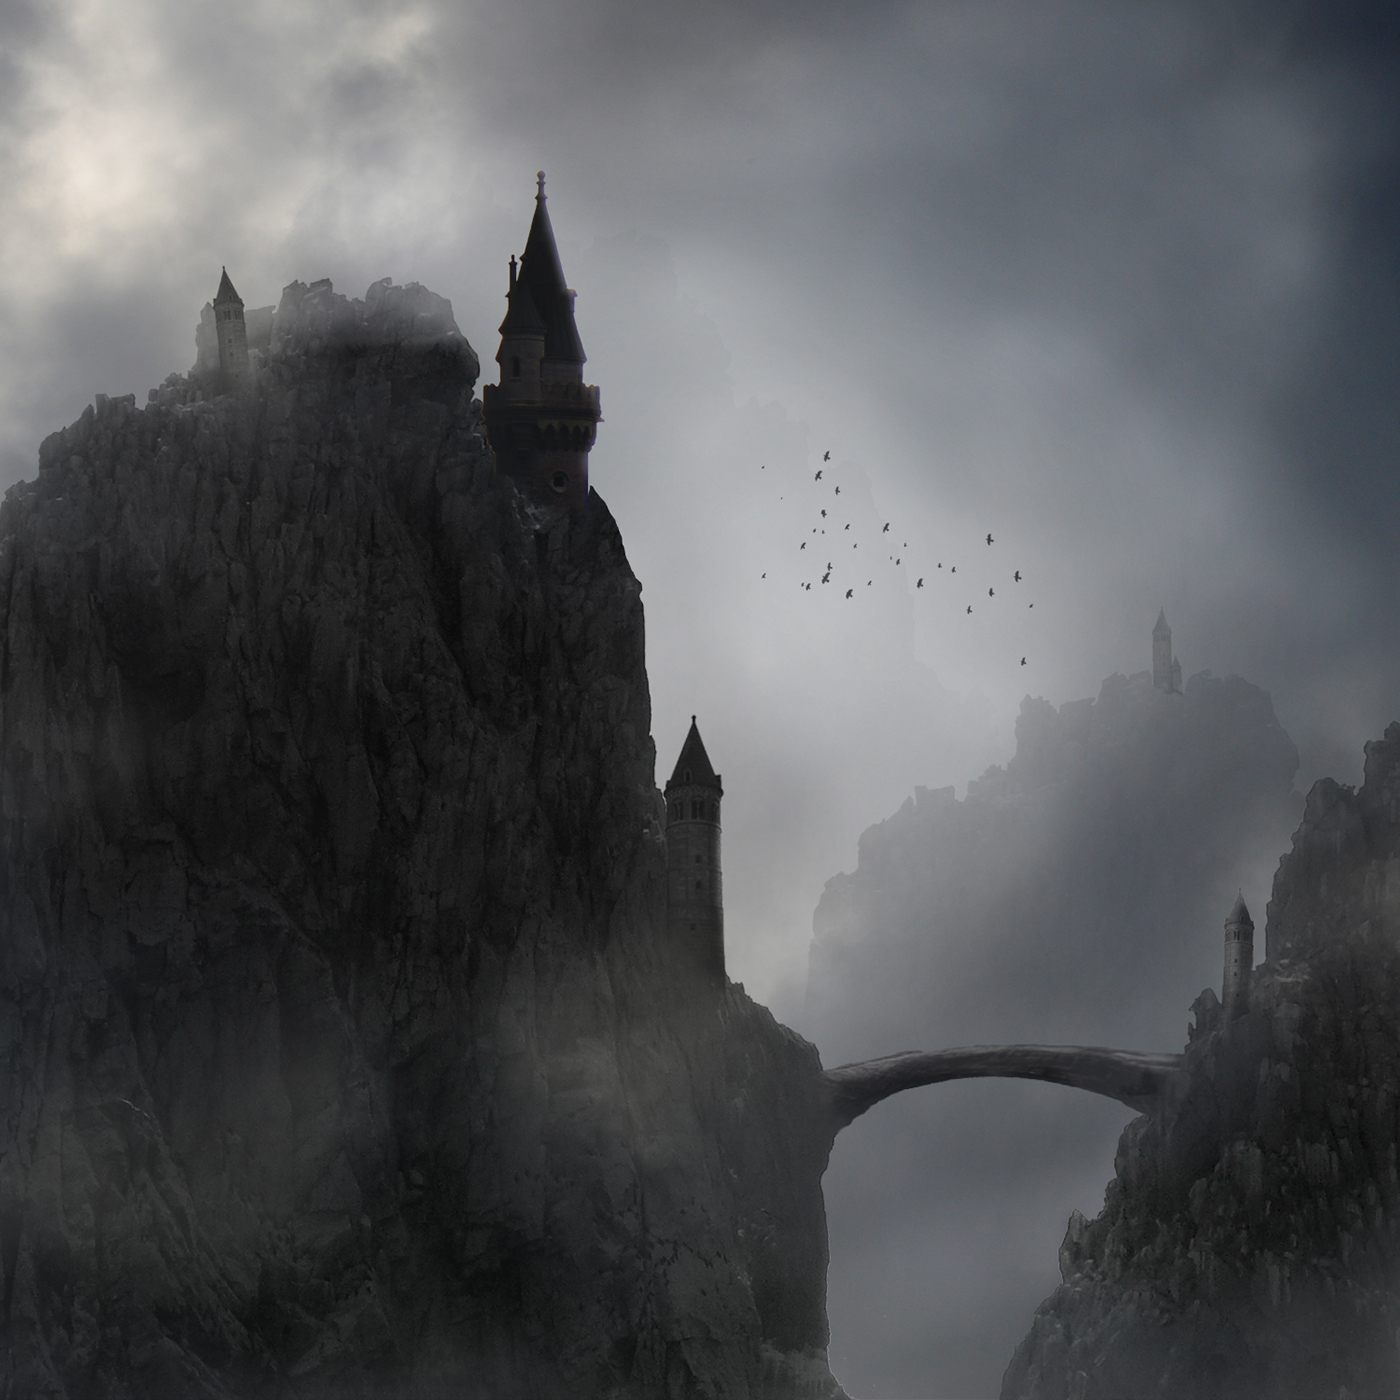 fog mist mountain castles towers grey